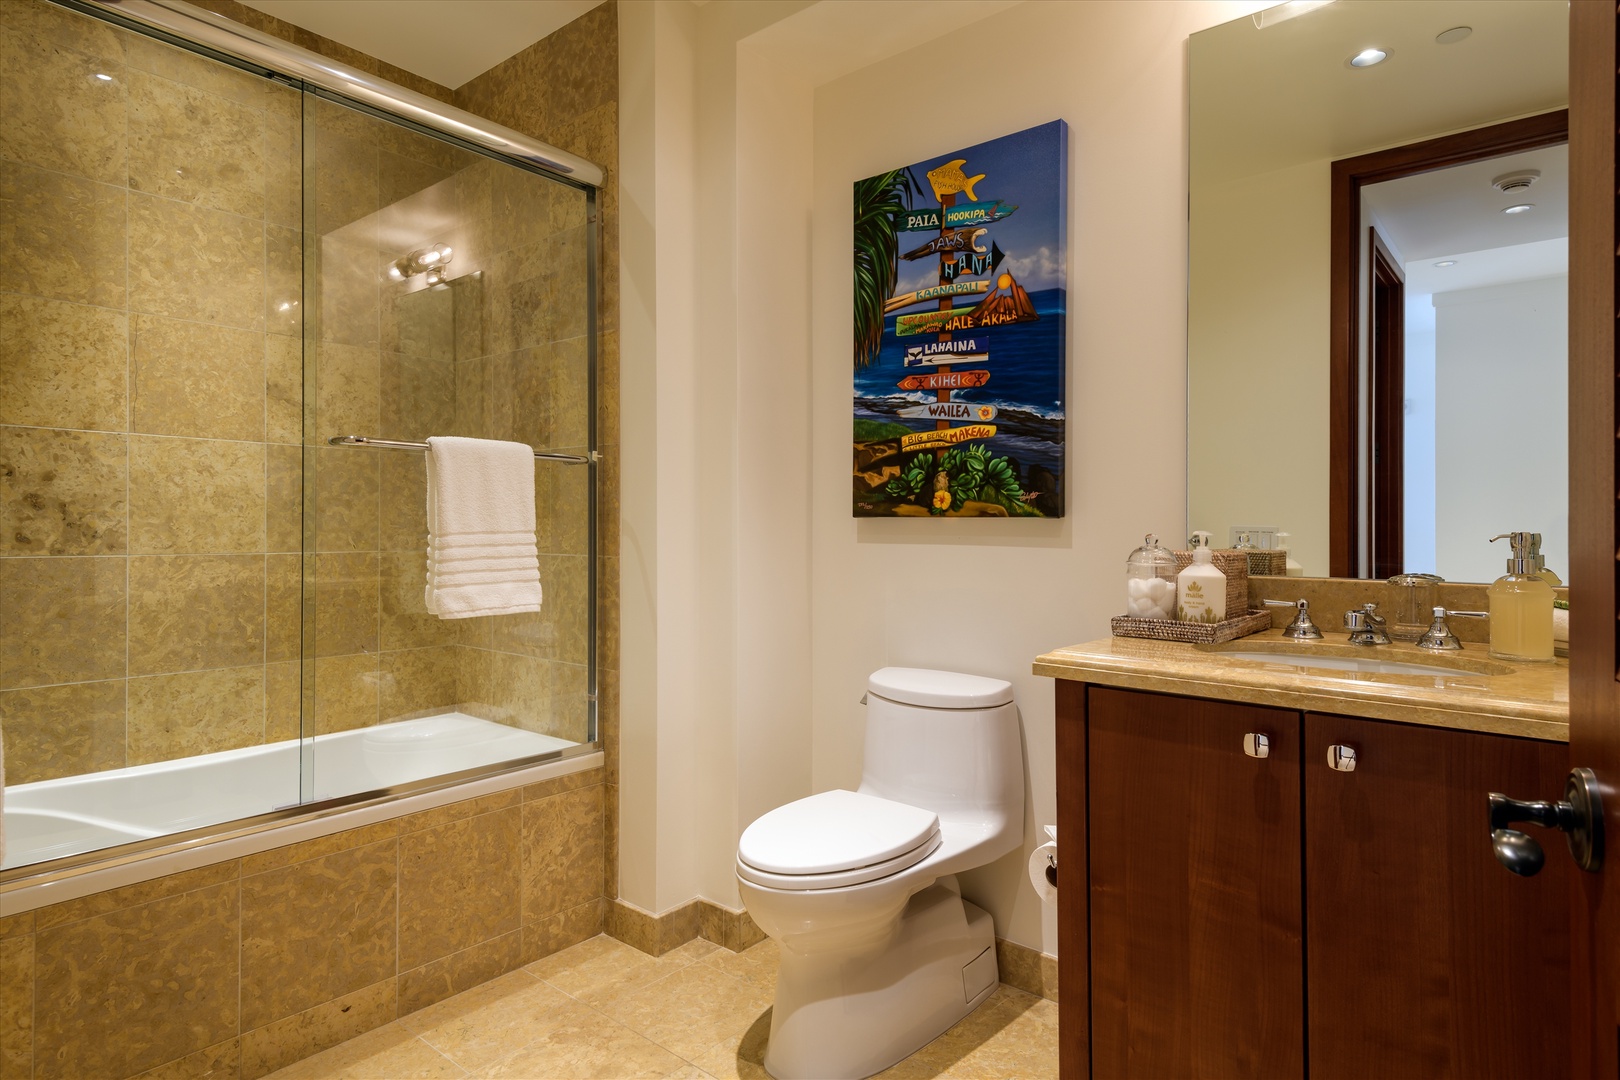 Wailea Vacation Rentals, Blue Ocean Suite H401 at Wailea Beach Villas* - 3rd Bedroom Bathroom